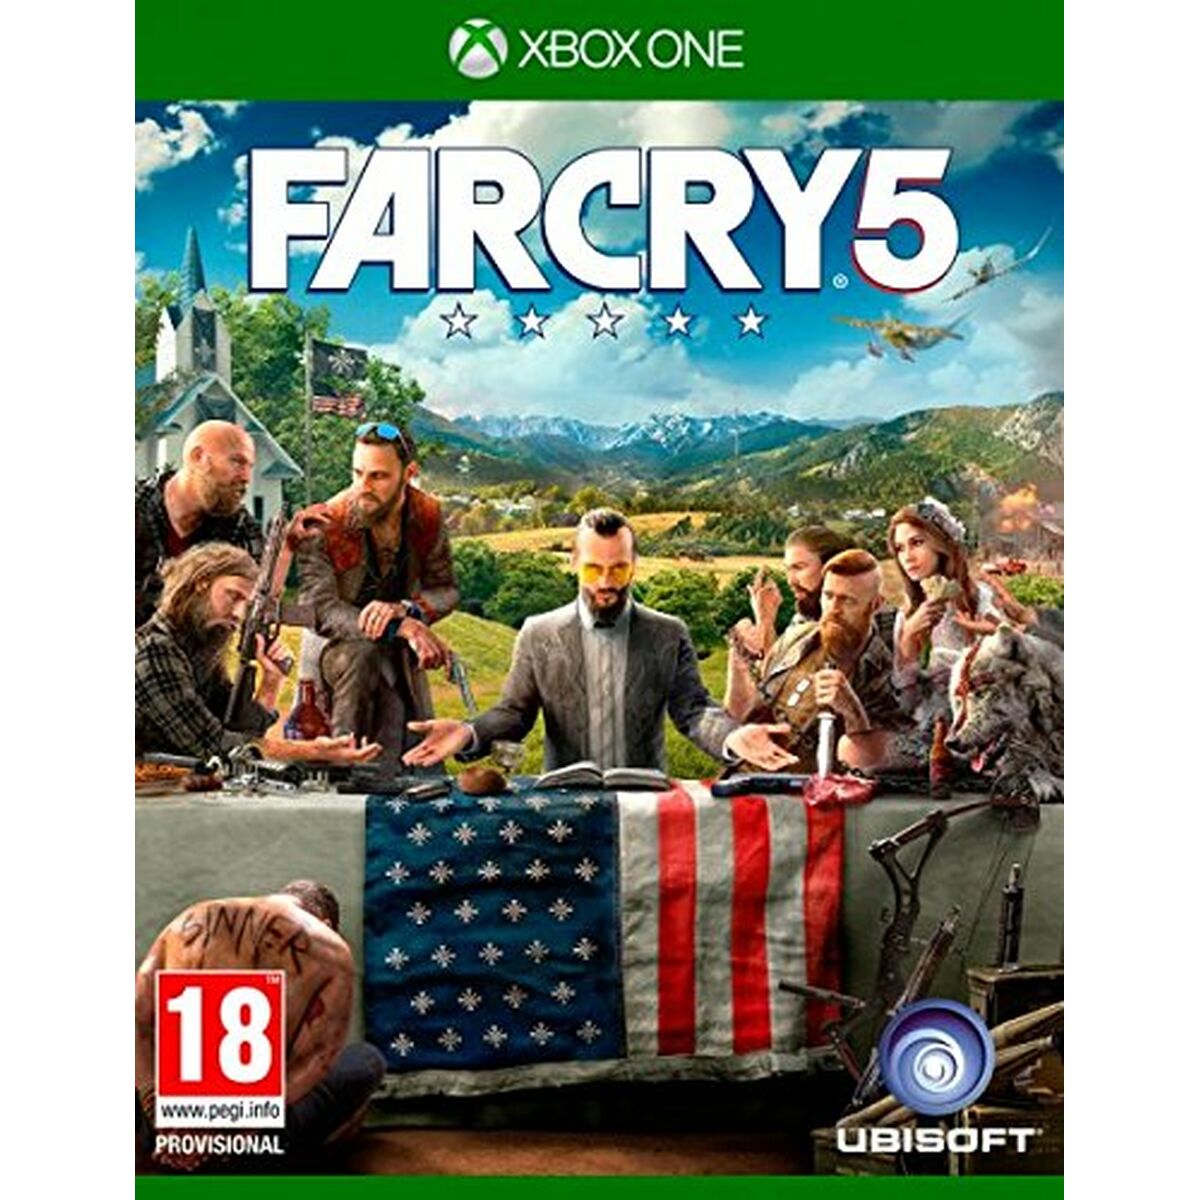 Joc video Xbox One Ubisoft FARCRY 5